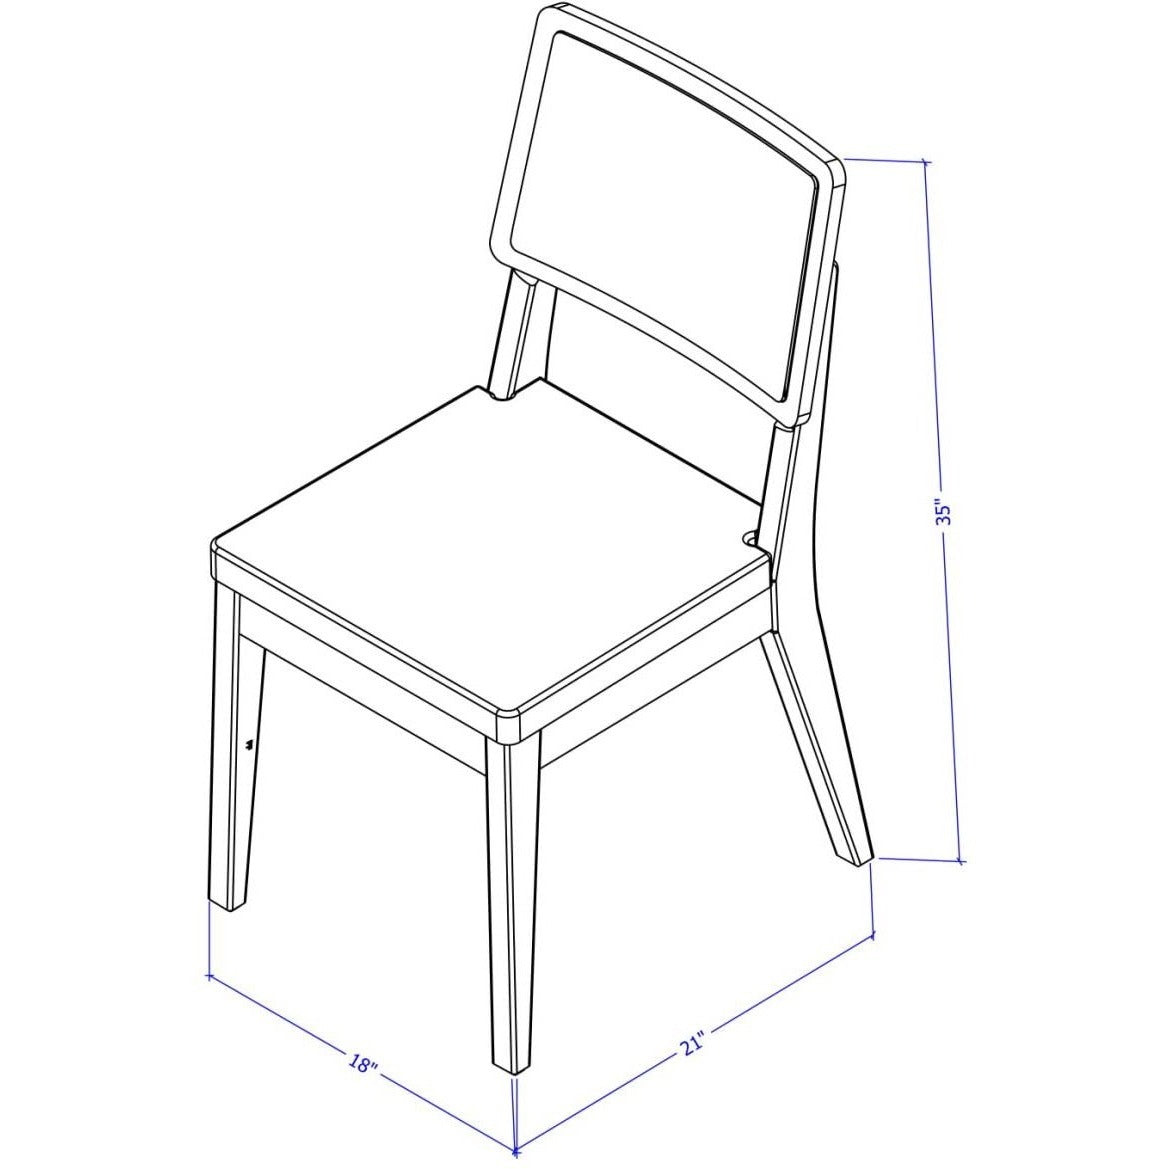 Manhattan Comfort Pell 2-Piece Dining Chair in Dark Beige and Maple Cream-Minimal & Modern